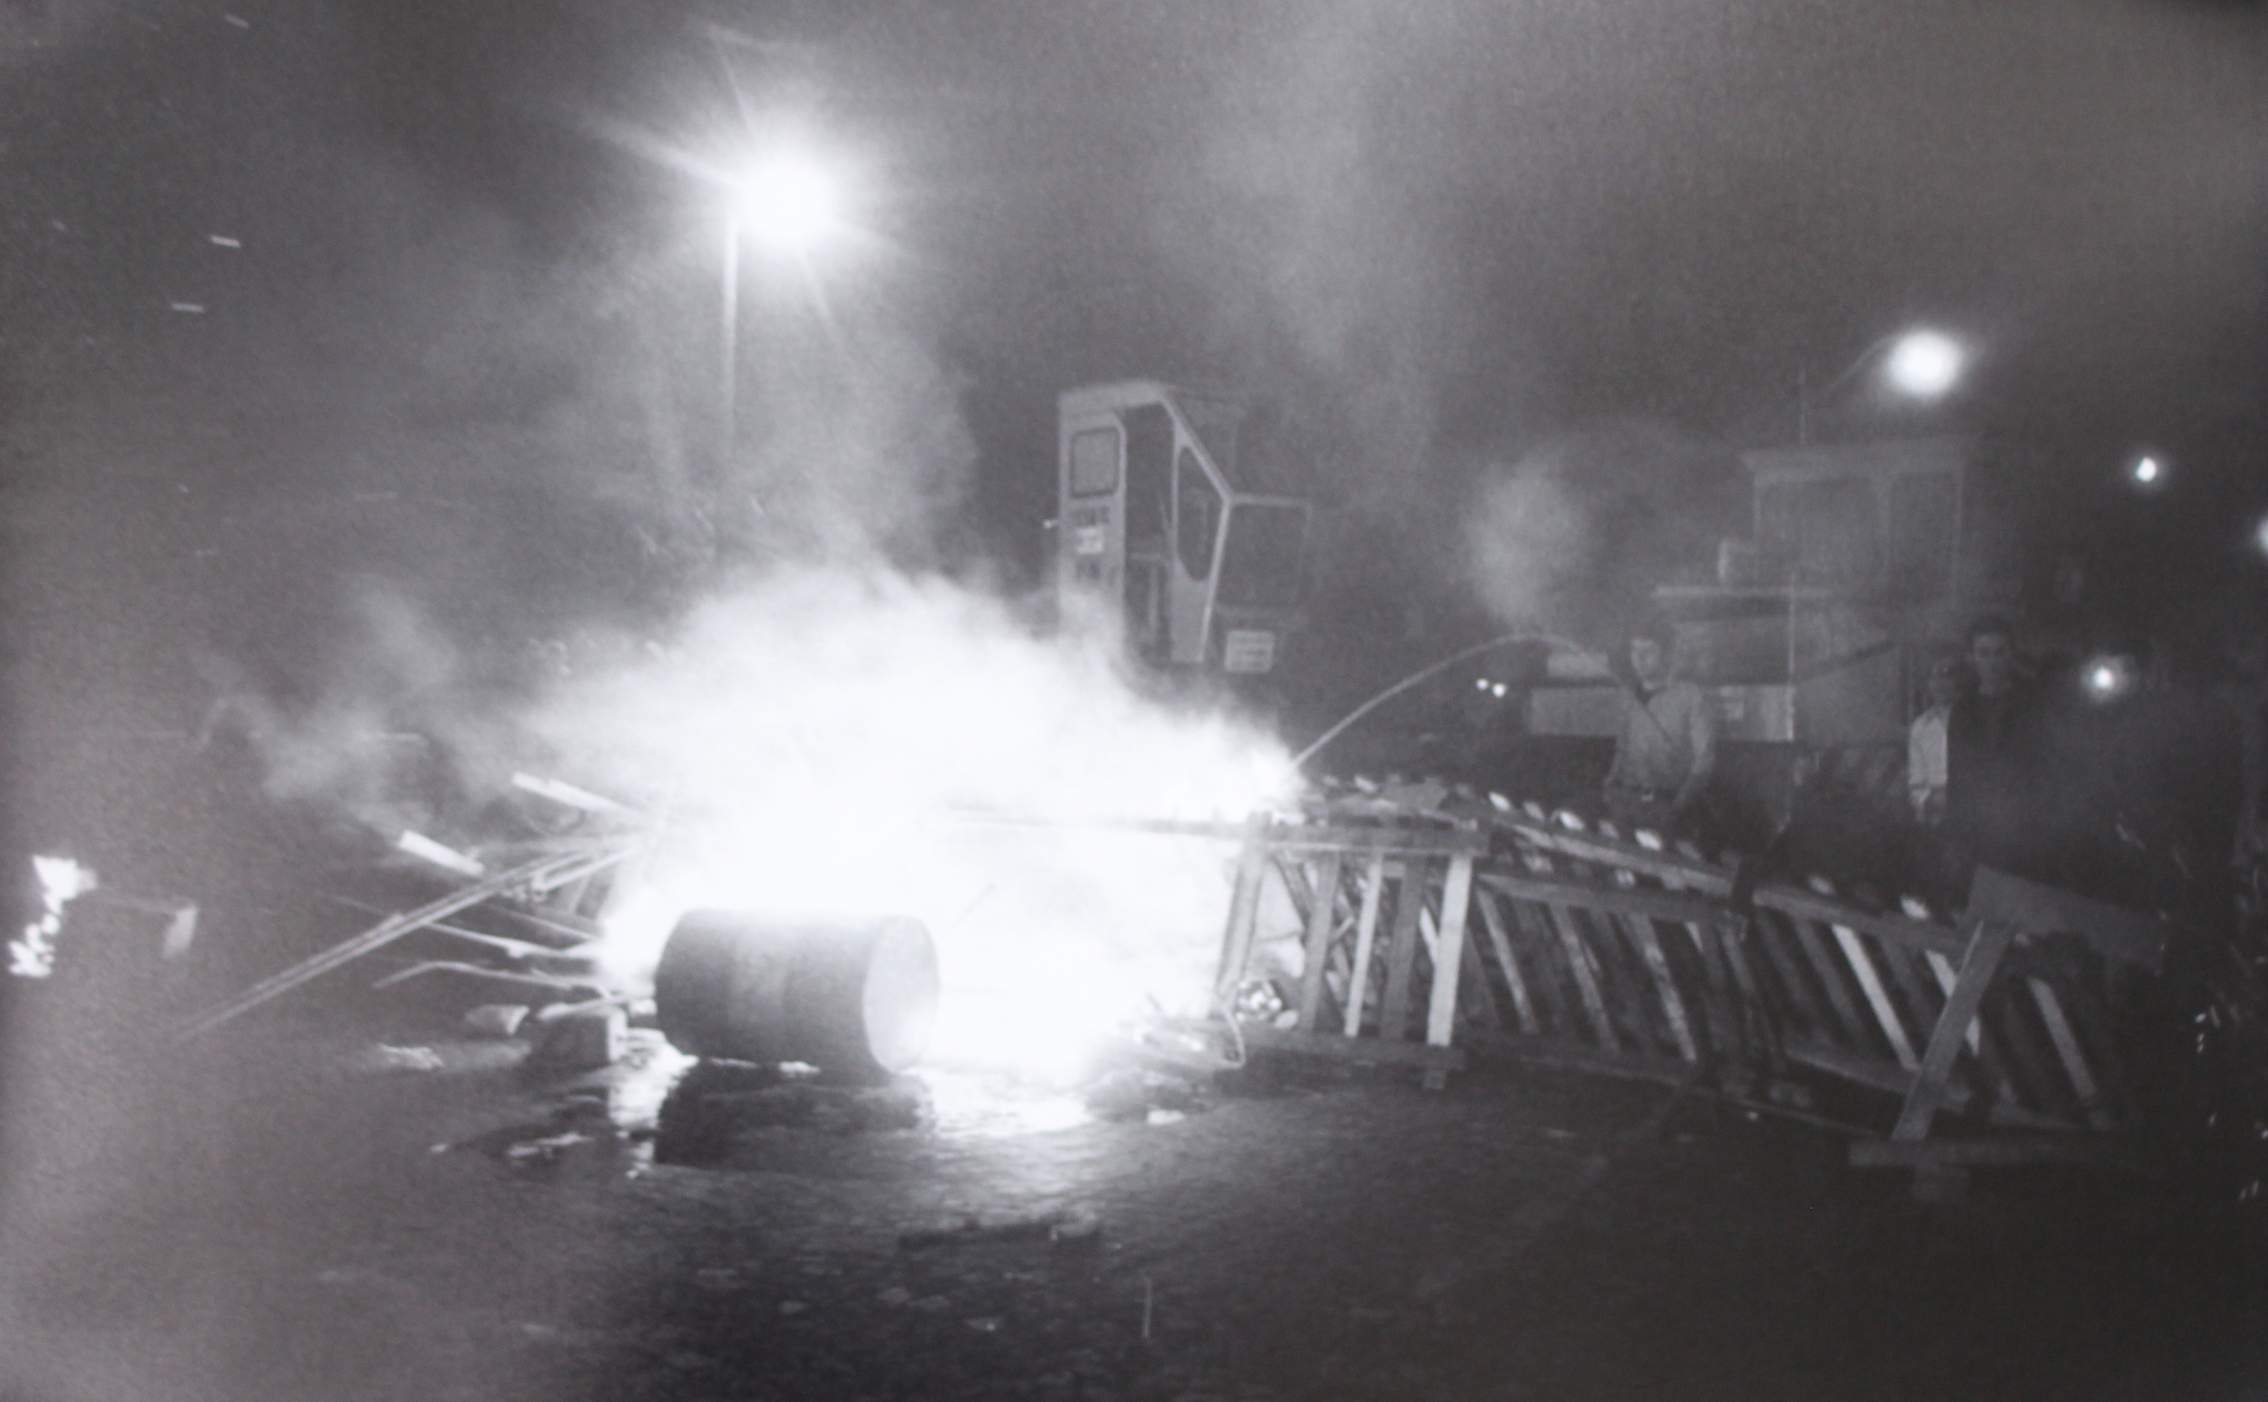 Barricade improvisée mise à feu avec du matériel de chantier. © Philippe Gras